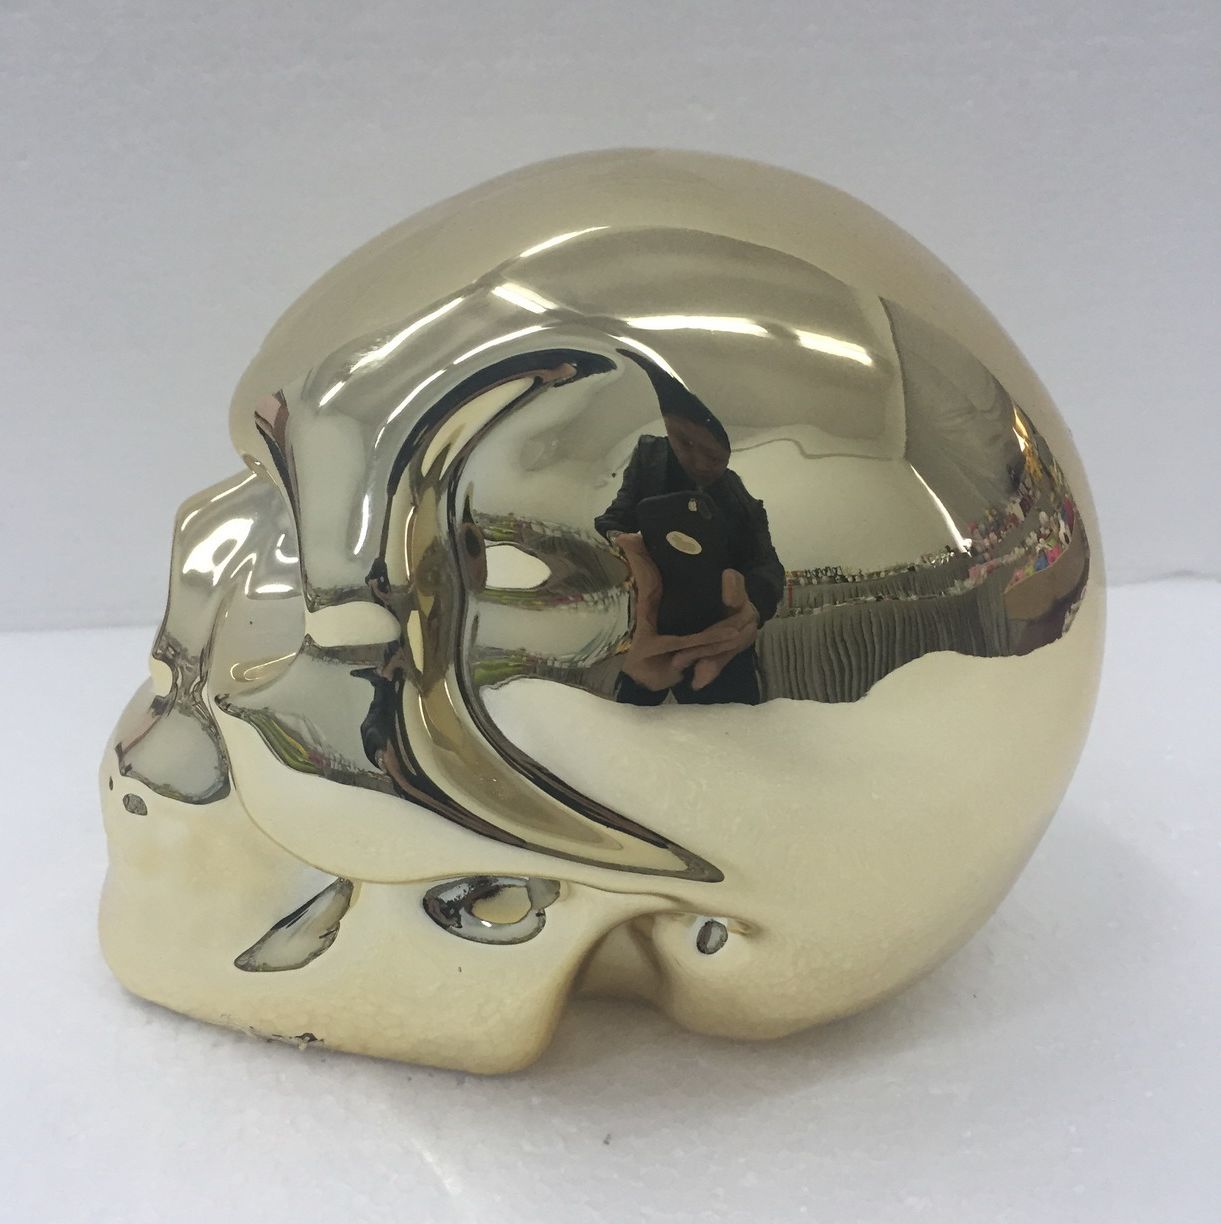 New Handmade Cigarette Butt Snuffer White Ceramic Skull Head